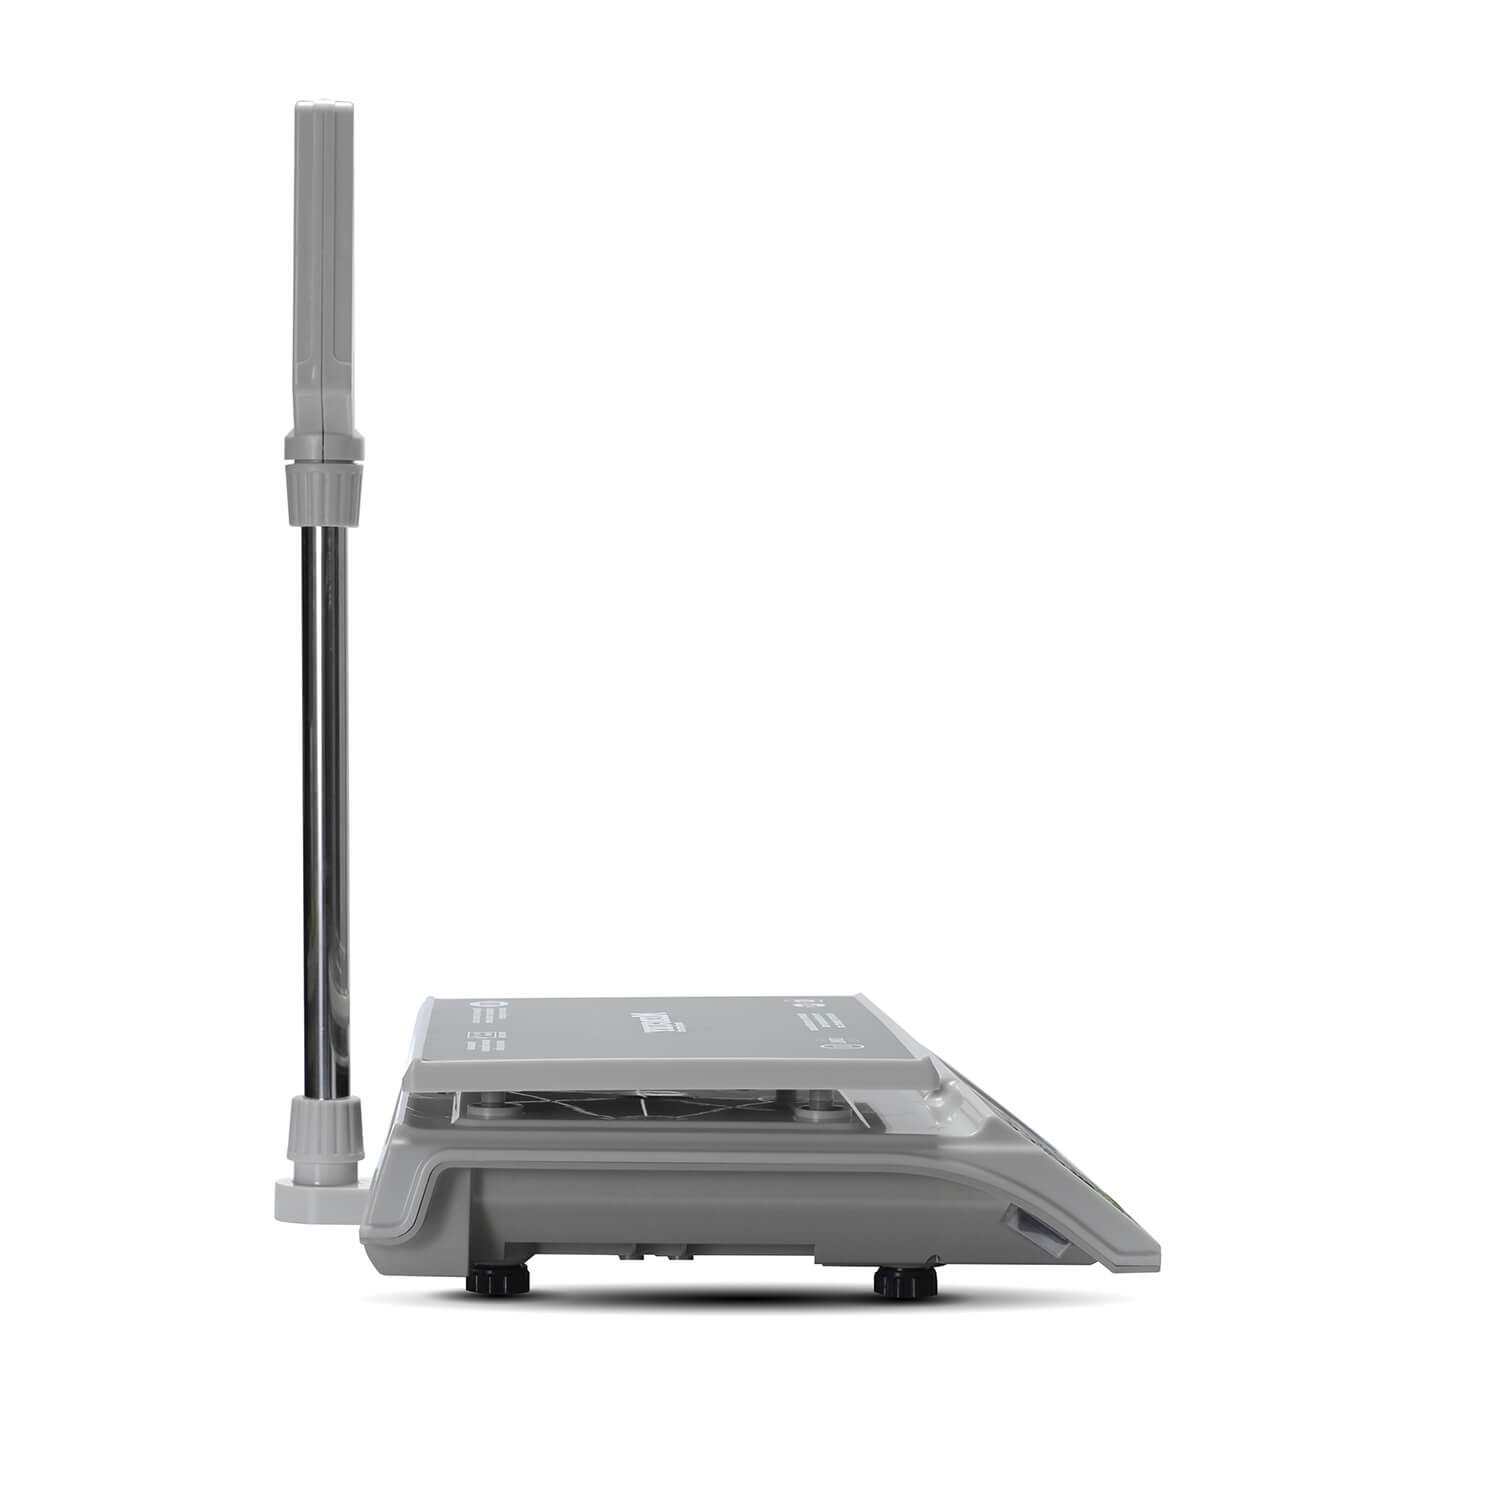 Торговые настольные весы M-ER 326 ACP-15.2 "Slim" LCD (3044)